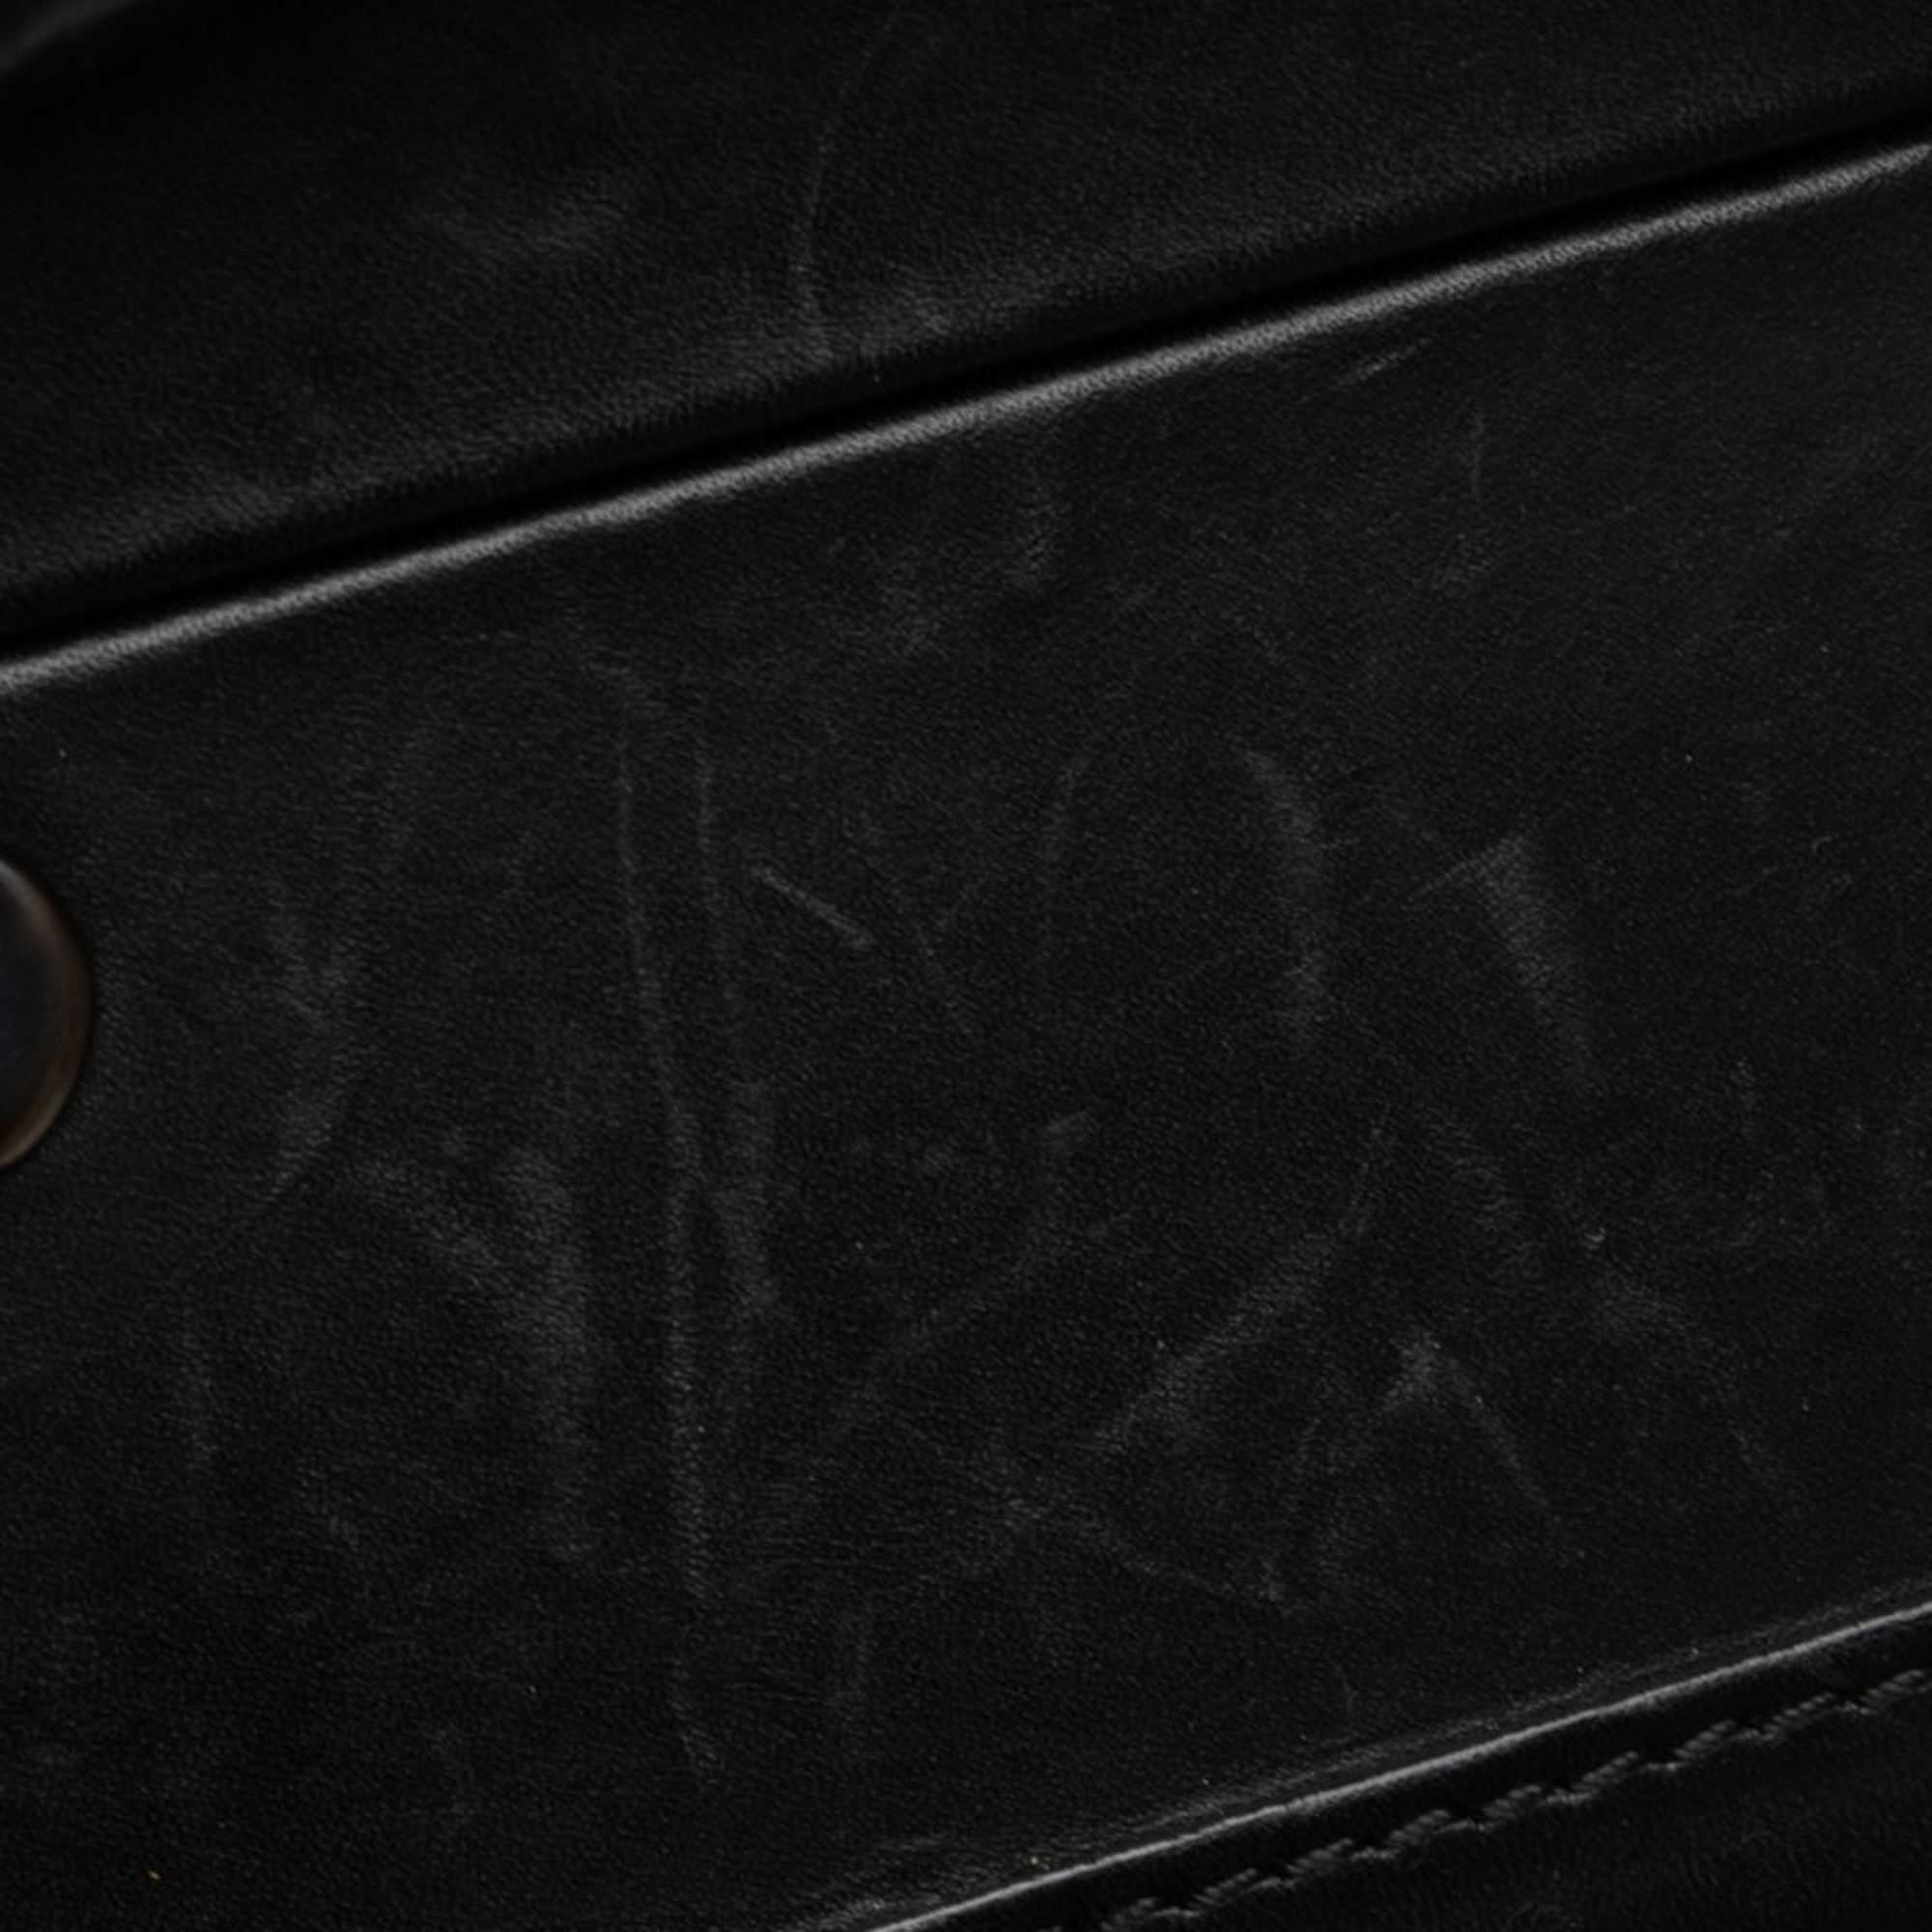 Bottega Veneta Intrecciato Attache Case Trunk Black Calf Leather Men's BOTTEGAVENETA